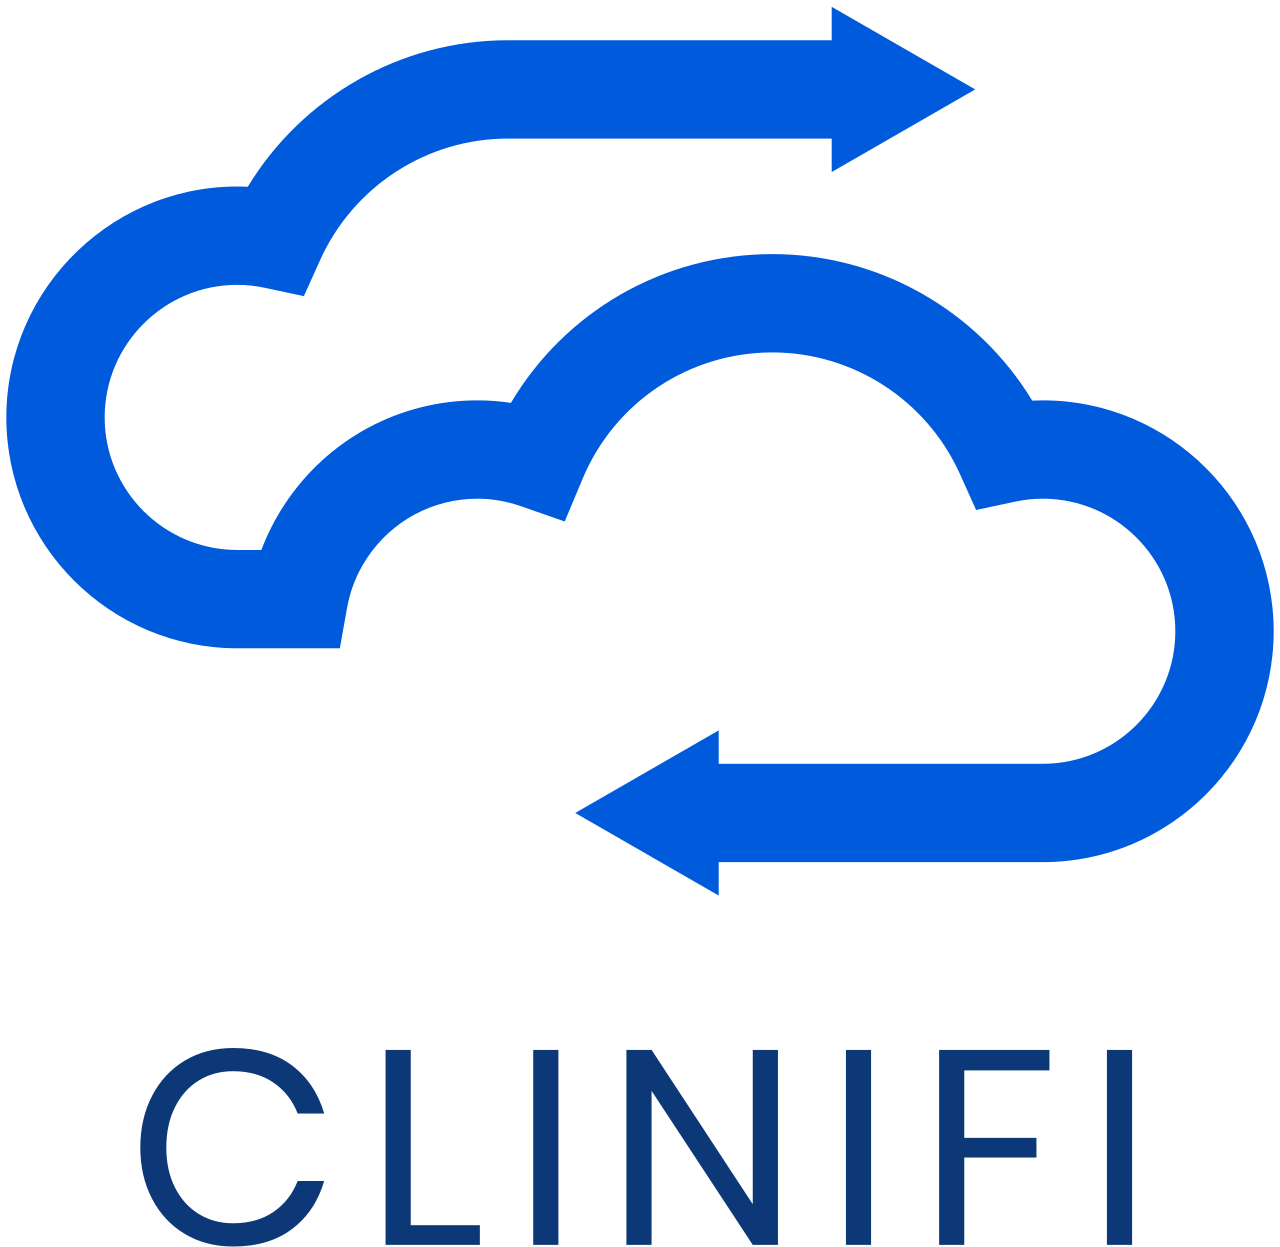 CliniFi's logo